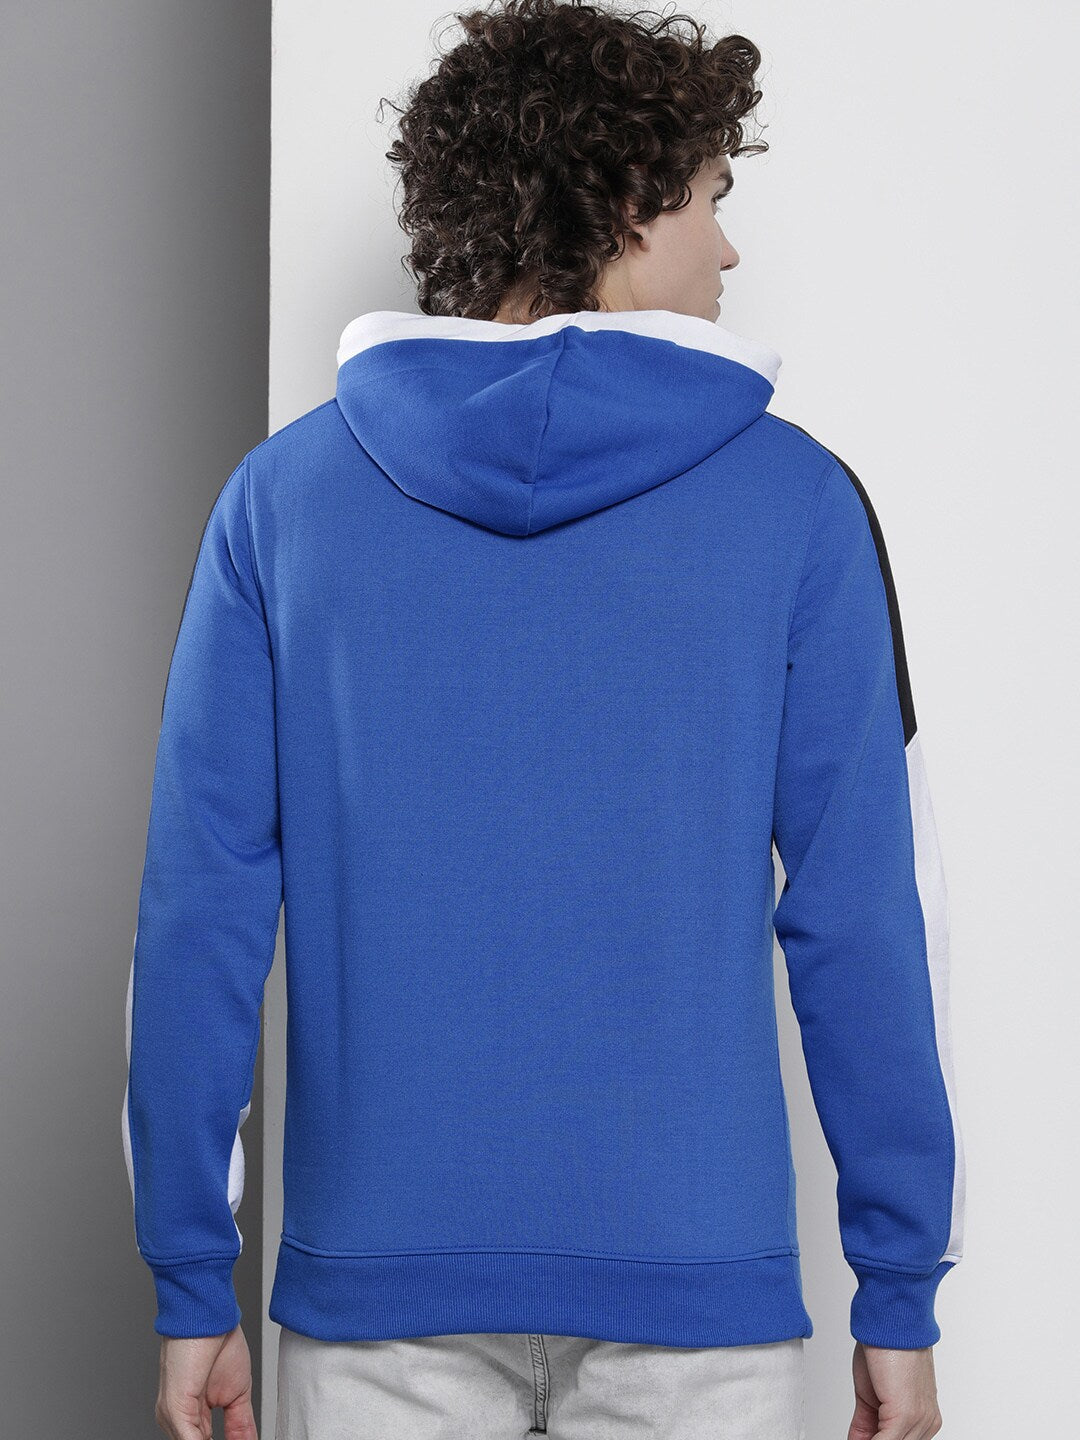 Shop Men Casual Sweatshirt Online.